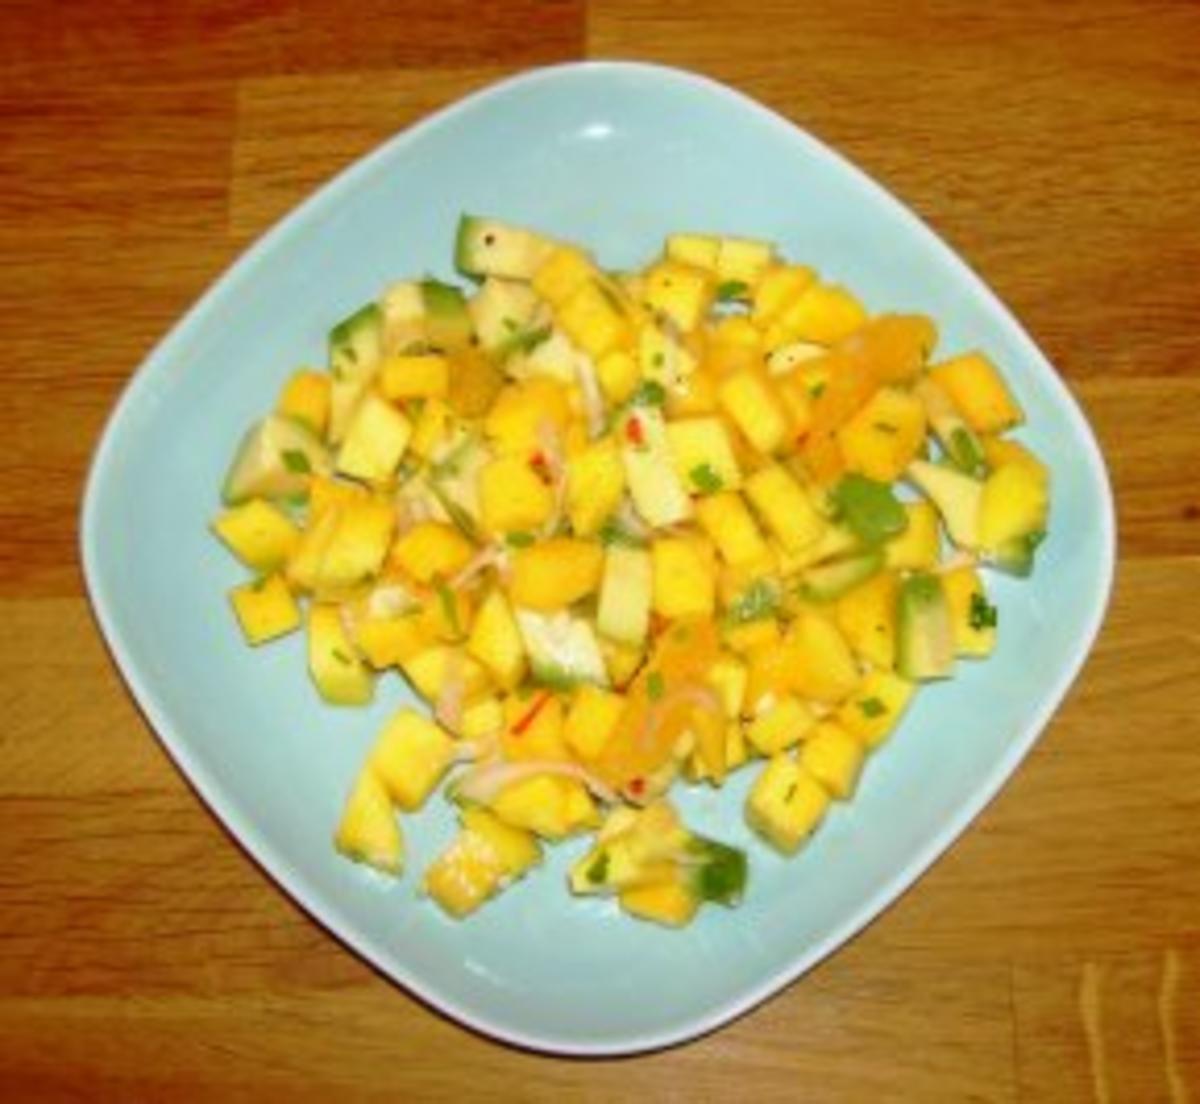 Avocado-Mango-Salat - Rezept